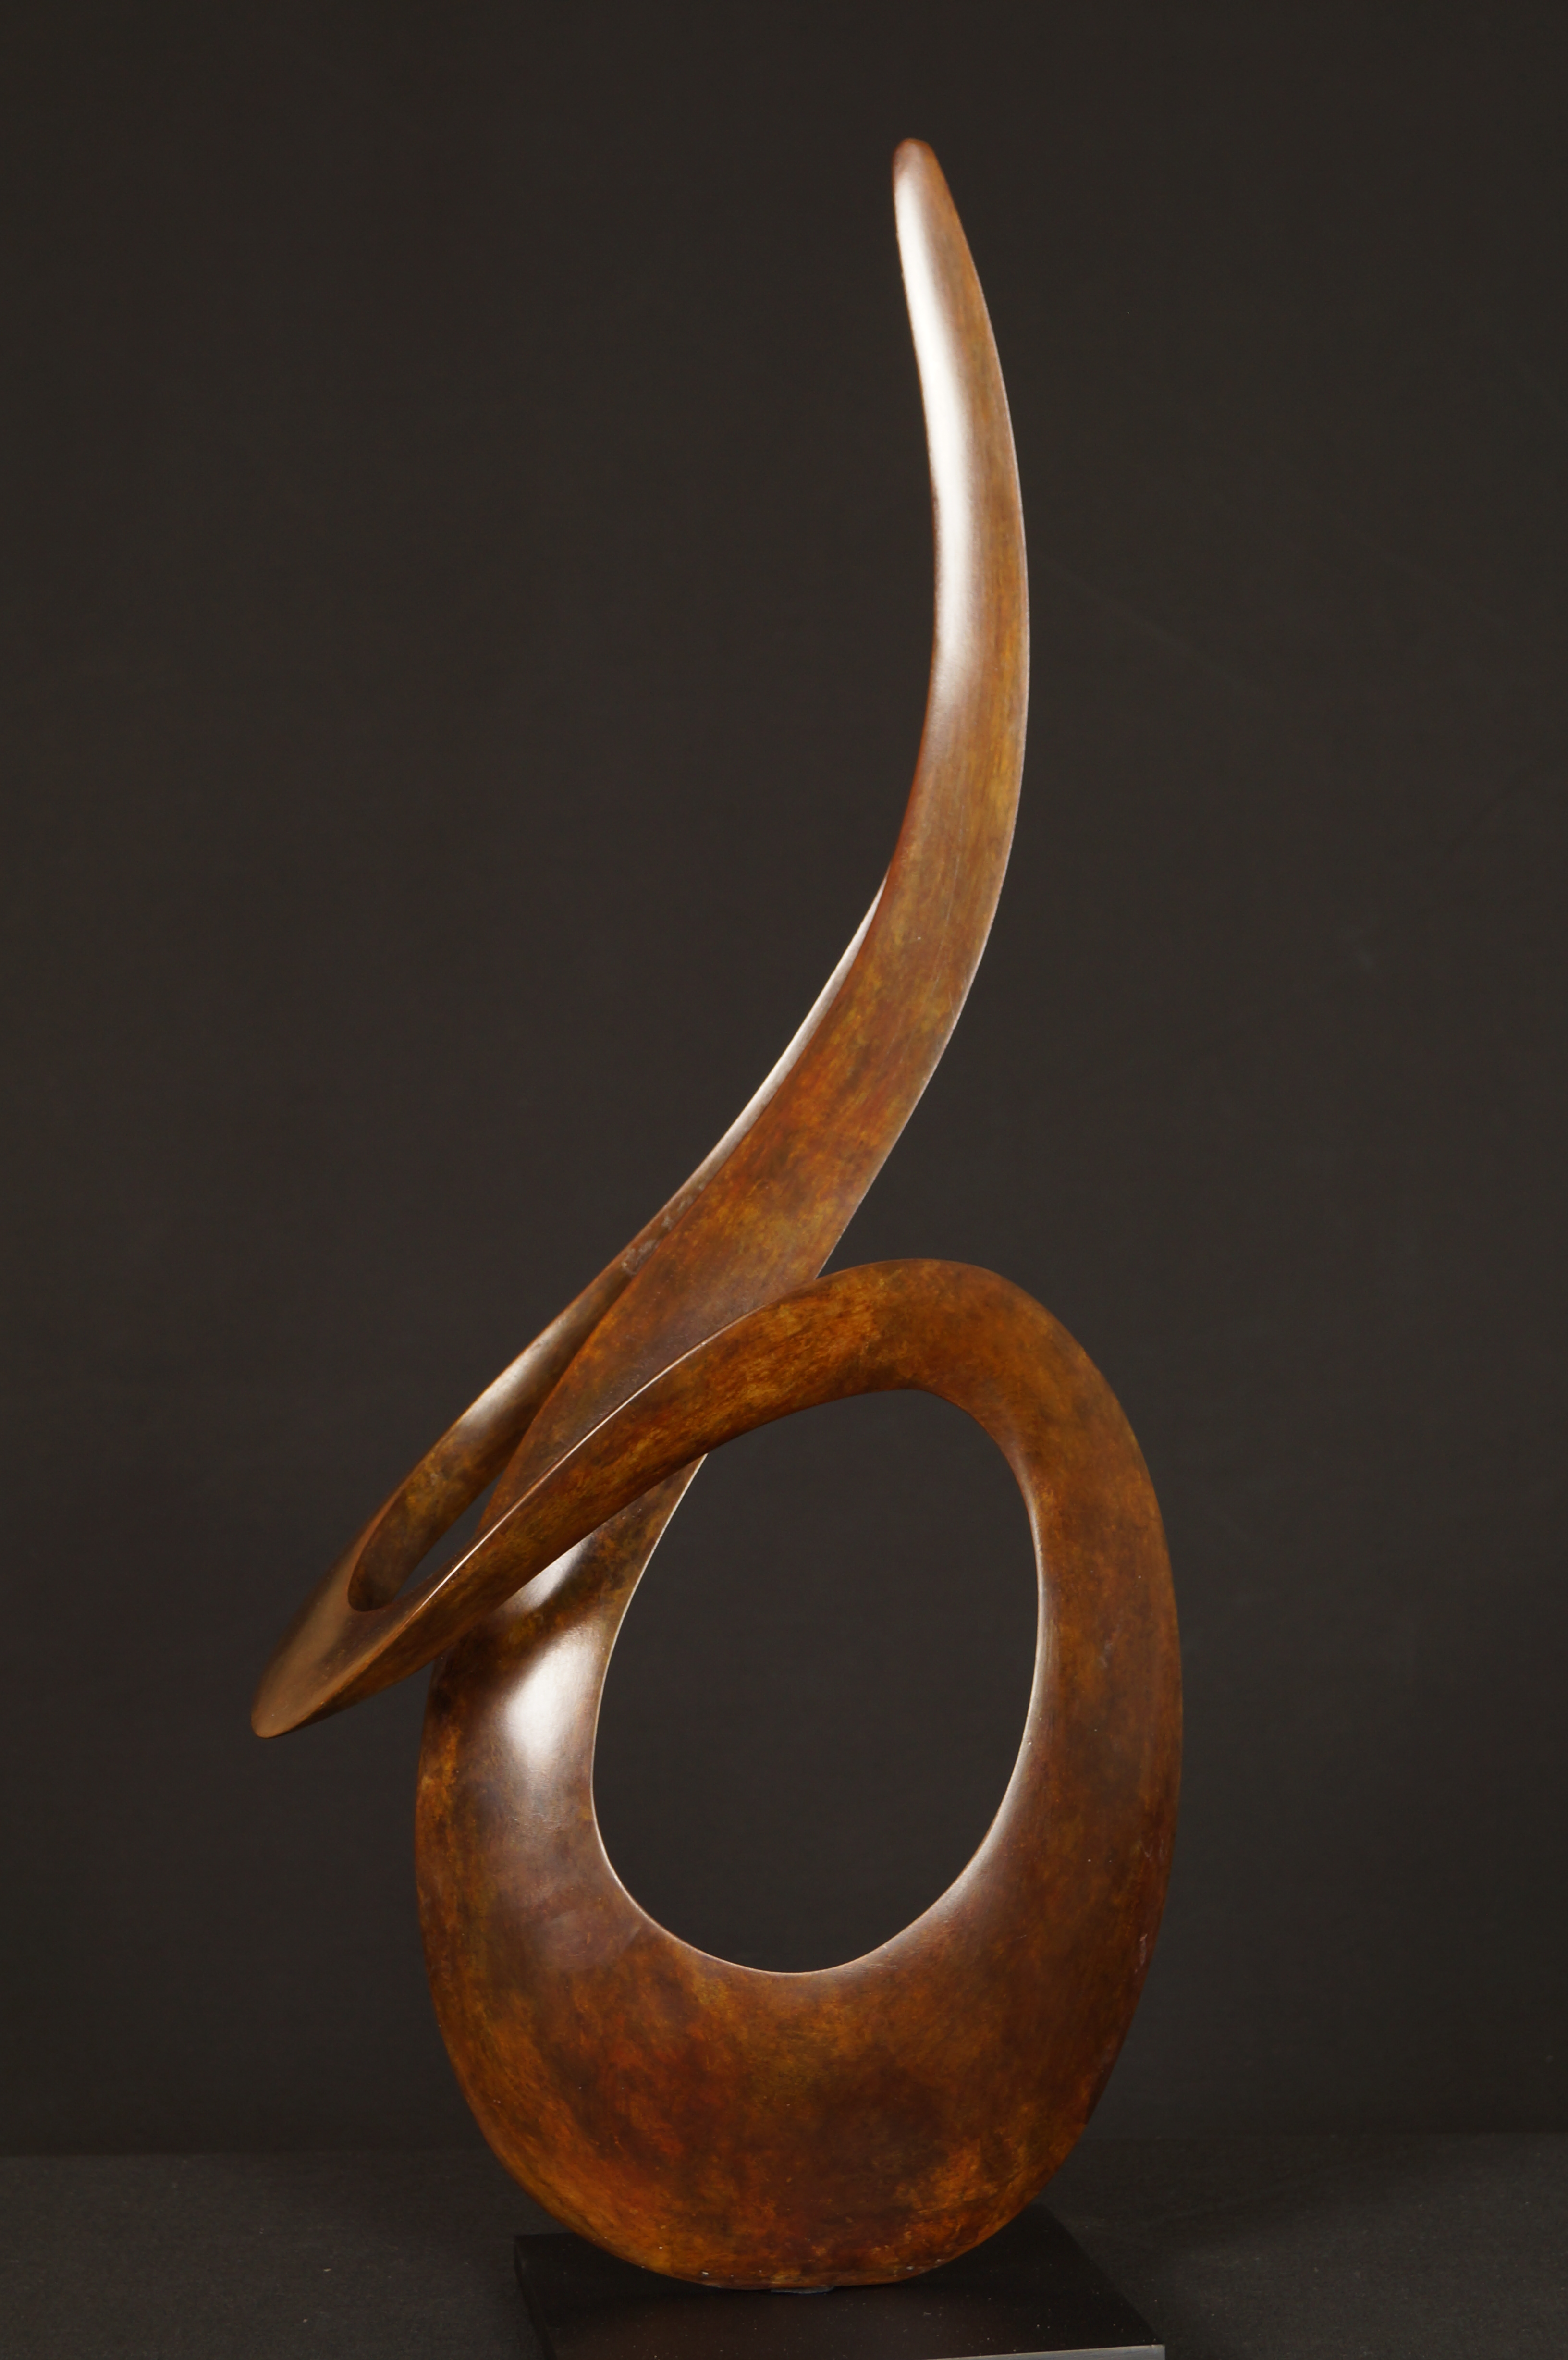 Magnifique sculpture de l'artiste sculpteur Edouard Hervé L'Etourdie bronze original Patine marron claire abstrait Formes géométriques Courbes à découvrir à toute l'année à la Galerie Maner de Pont-Aven en Bretagne